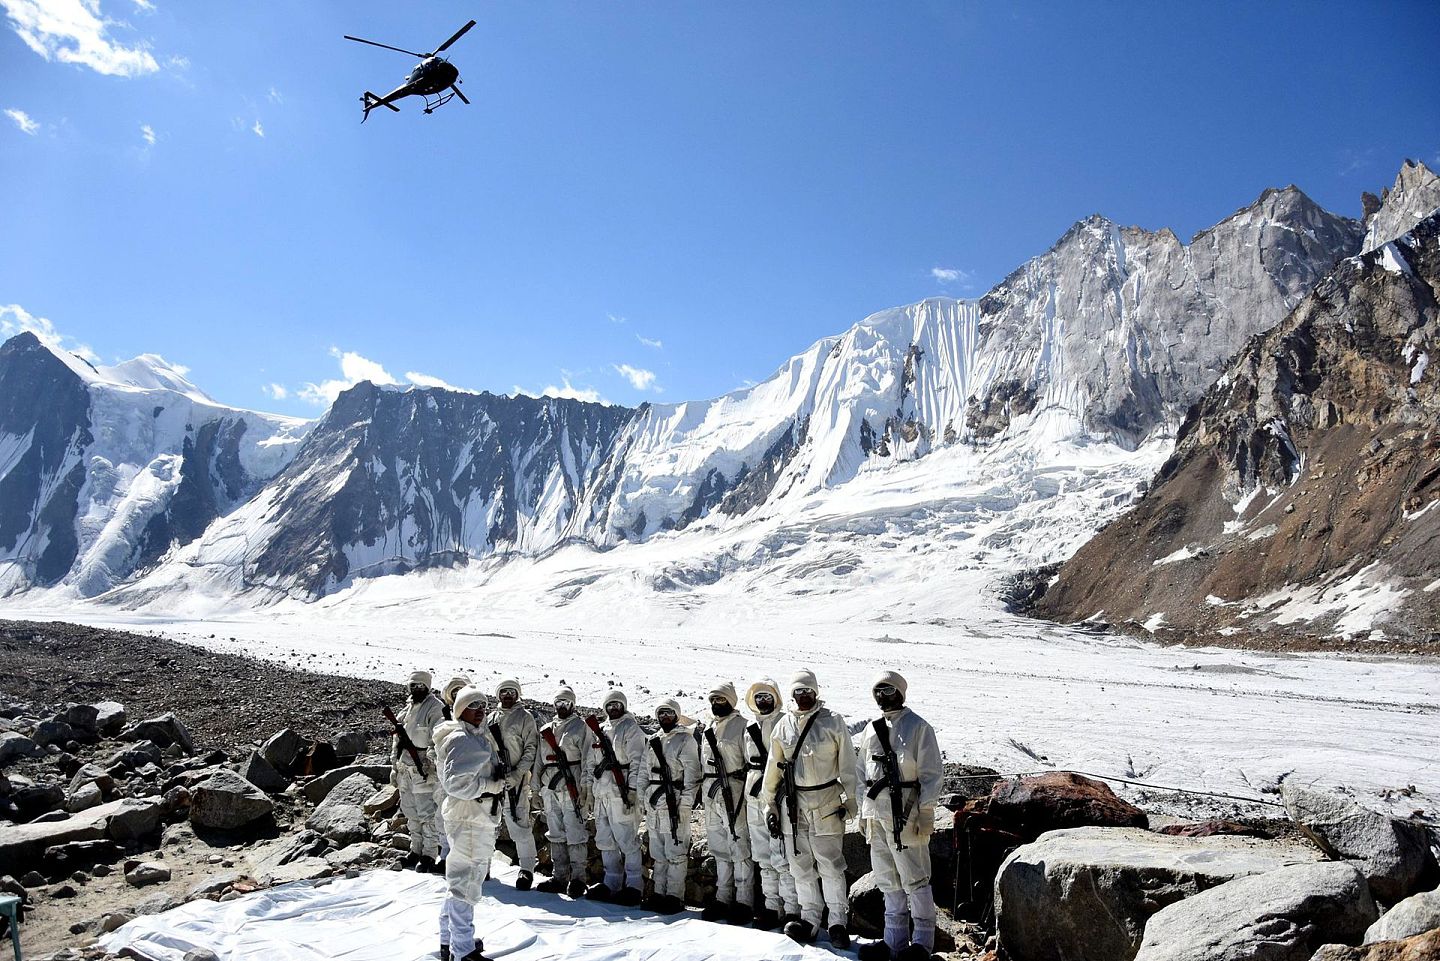 锡亚琴冰川的巴基斯坦一侧，装备严整的巴军士兵正在巡逻。印度和巴基斯坦都声称拥有该地区主权。海拔高达8,000米的锡亚琴被认为是世界上海拔最高的战场。 当地也是印军后勤部门生财的重要渠道。（Getty）